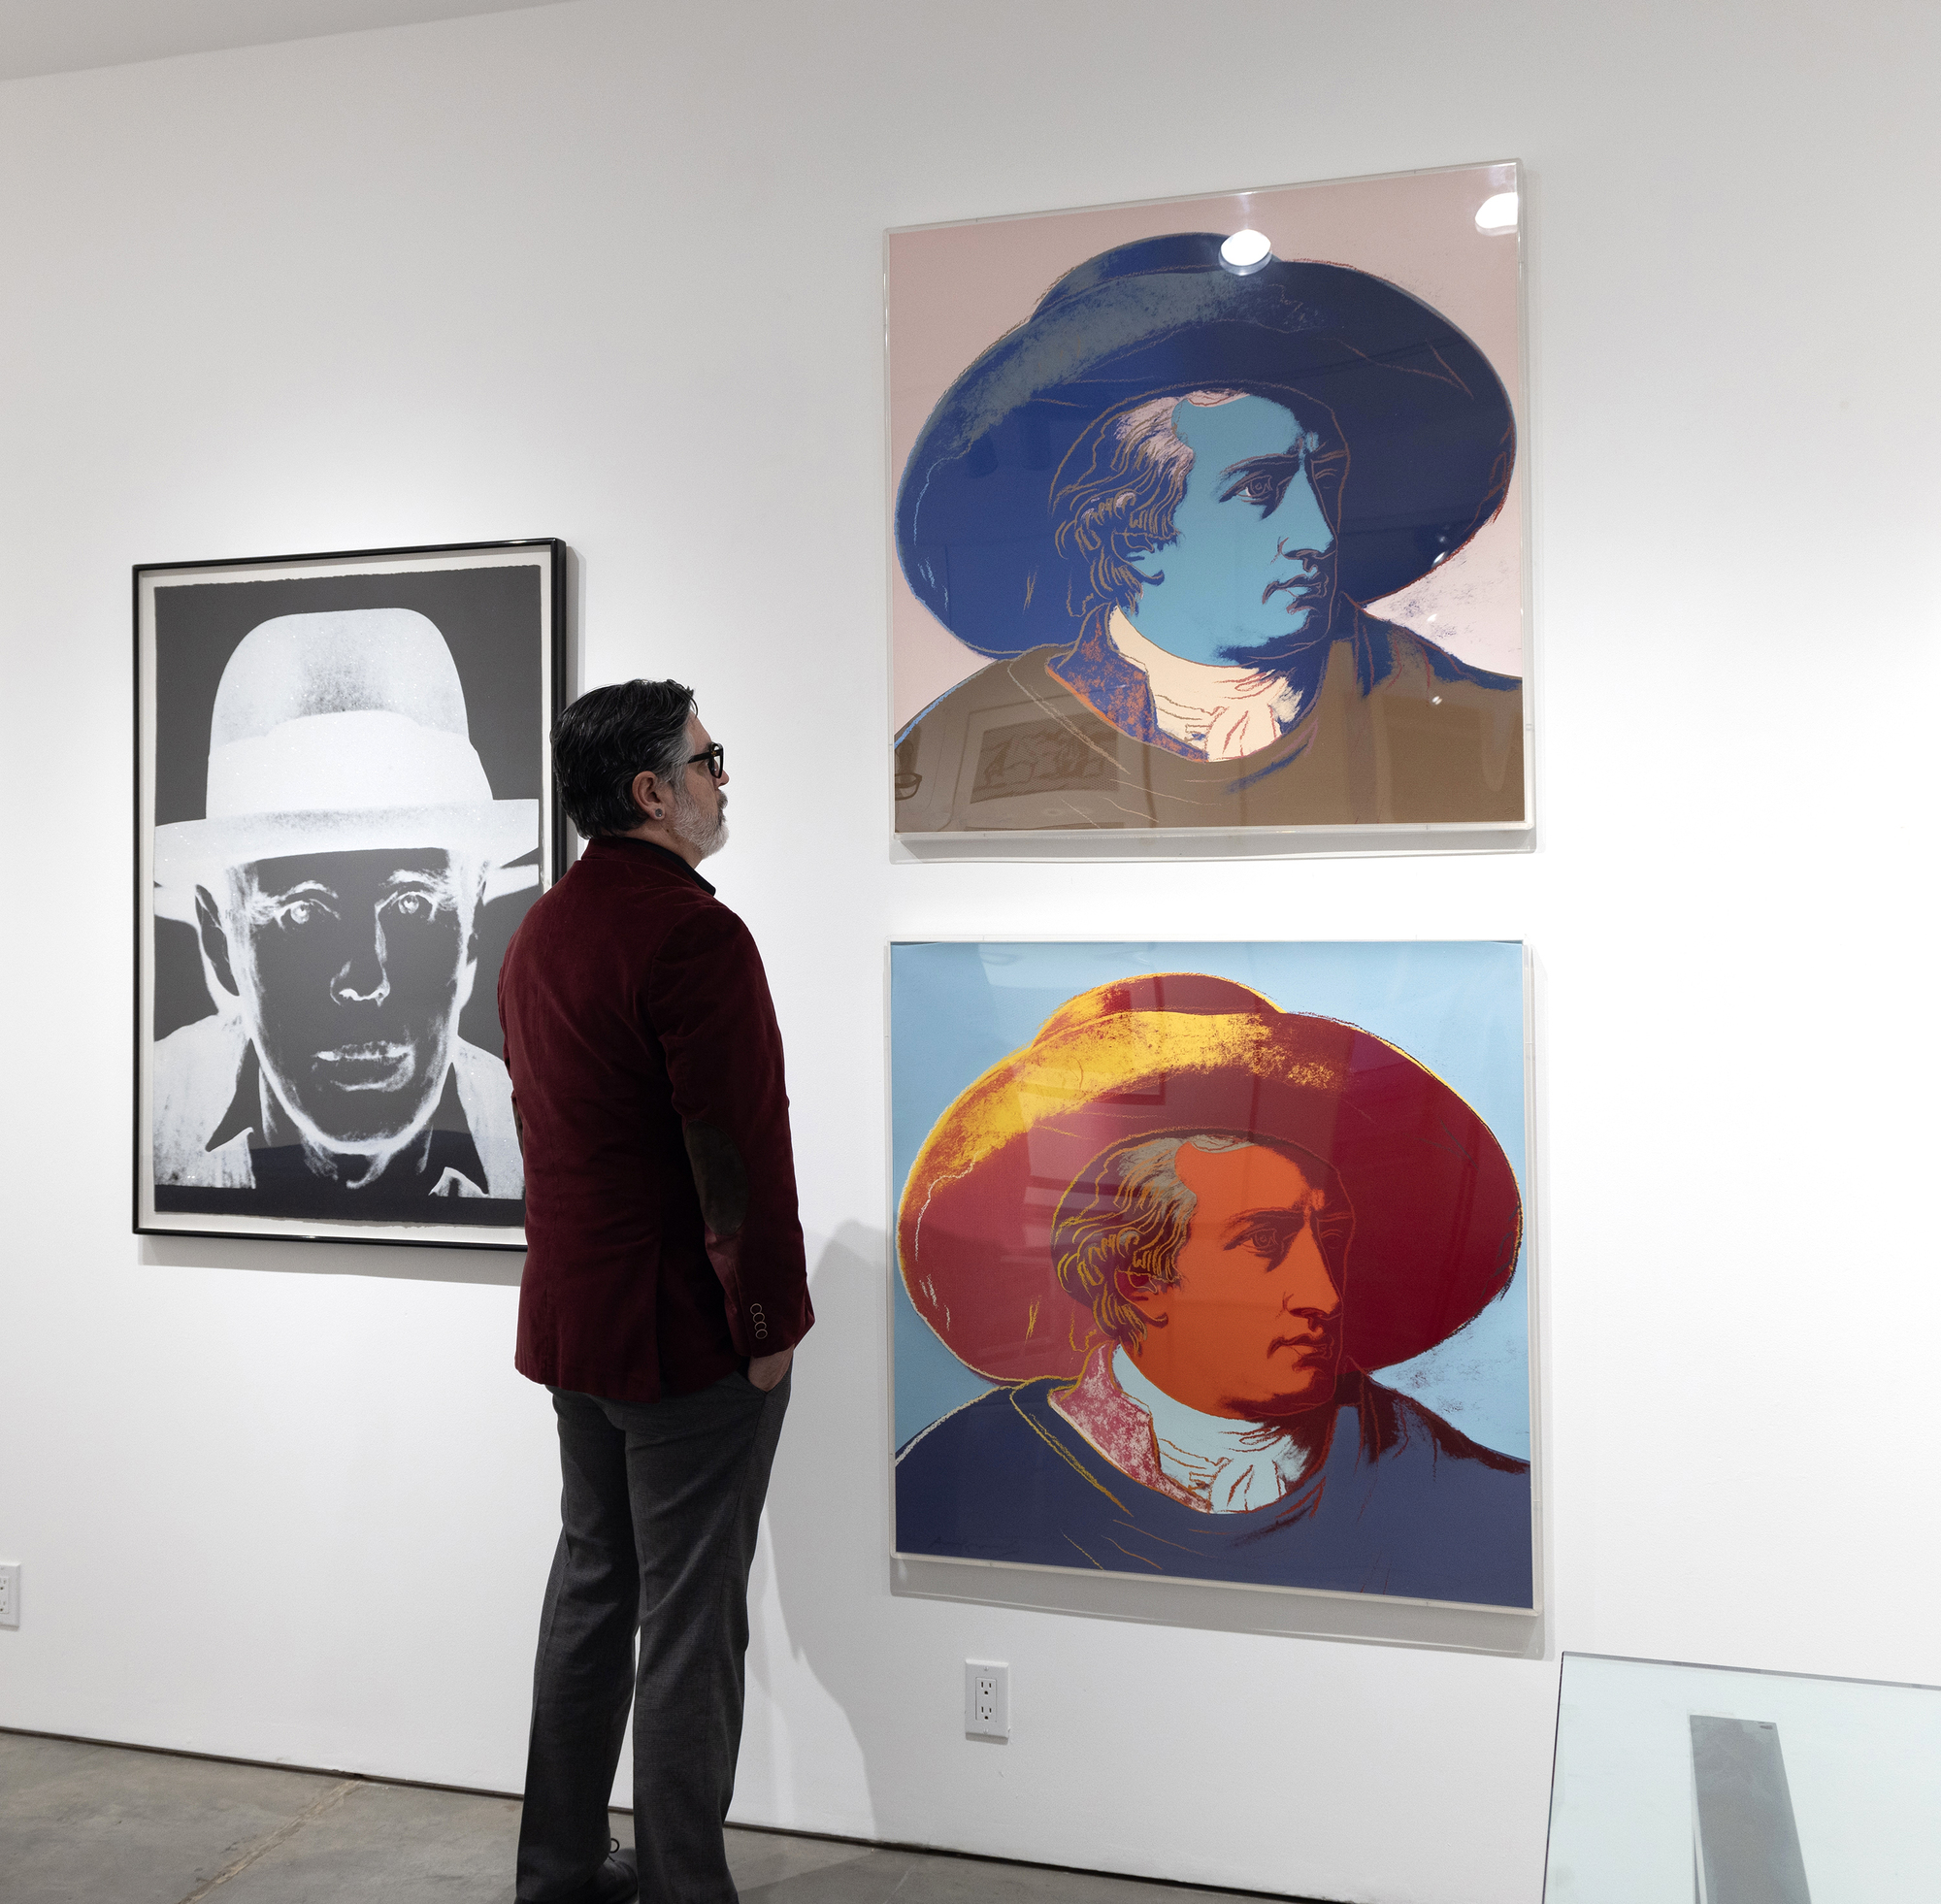 Andy Warhol, der für seine Faszination für Ruhm, Berühmtheit und kulturelle Ikonen bekannt ist, ging gelegentlich über seine Zeitgenossen hinaus und bezog historische Persönlichkeiten mit ein. Von besonderem Interesse sind Goethes Farbtheorien, die die Wahrnehmung von Farben und ihre psychologische Wirkung betonen und im Gegensatz zum vorherrschenden, auf der Newtonschen Physik basierenden Verständnis von Farbe als wissenschaftlichem Phänomen stehen. Obwohl es keine direkte Verbindung gibt, dass Goethes Farbtheorie Warhol direkt dazu inspiriert hat, ihn als Sujet auszuwählen, unterstreicht sie thematisch, wie wir Warhols Kunst als Auseinandersetzung mit historischen Traditionen betrachten, um eine Verbindung zwischen ihren jeweiligen Bereichen und Epochen zu symbolisieren. In diesem Sinne ist das Werk eine Hommage und eine zeitübergreifende Zusammenarbeit, die Warhols Bildsprache mit Goethes Bewusstsein für Farbe als starkes, stimulierendes Element der Wahrnehmung verbindet.